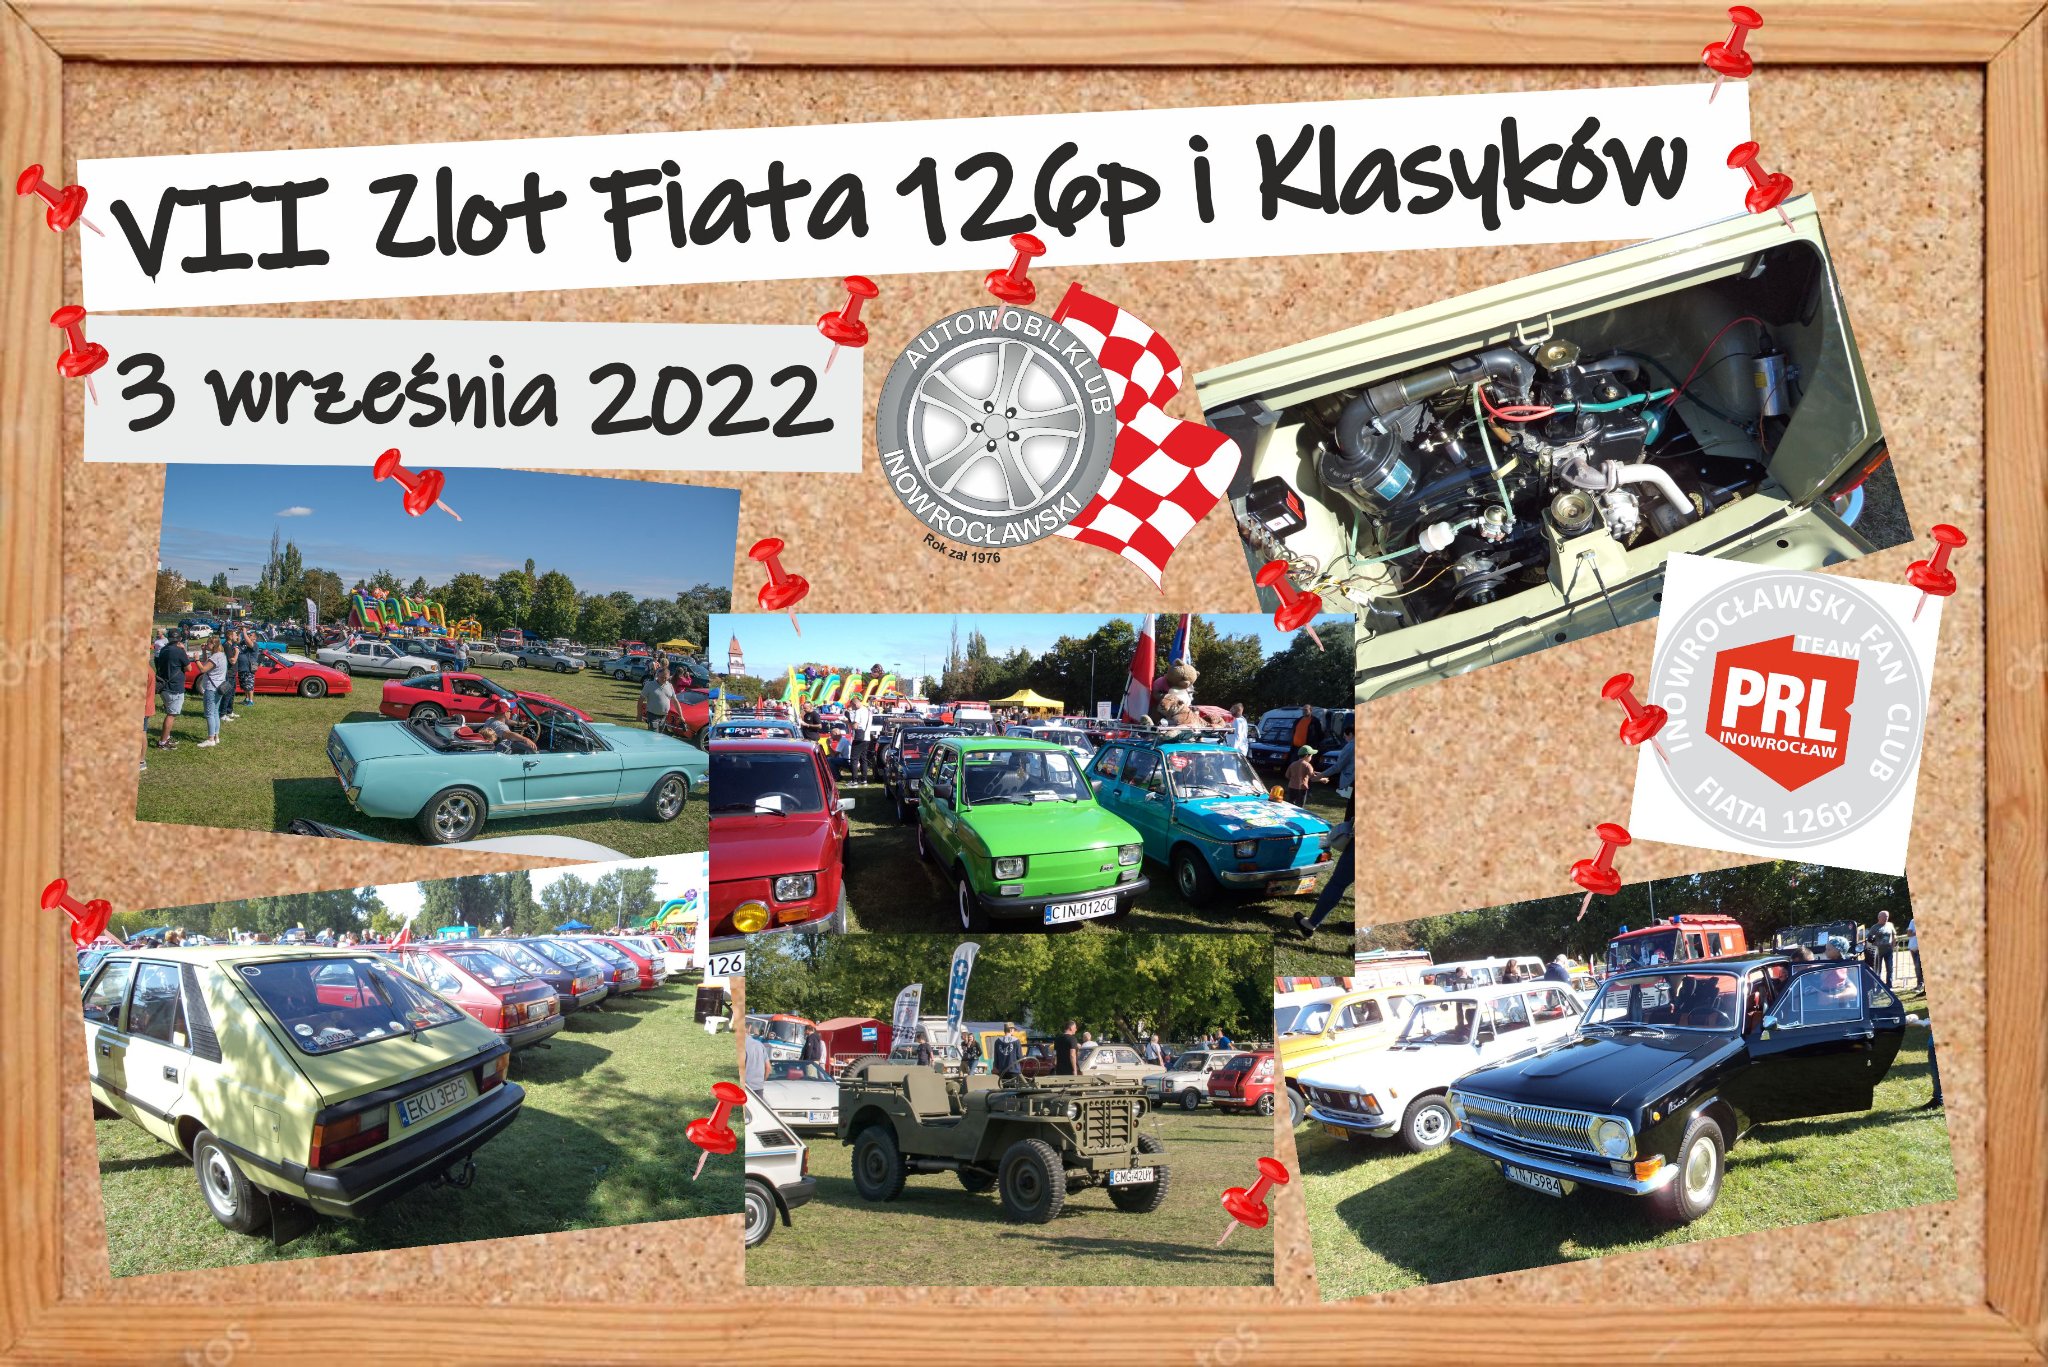 zaproszenie na zlot VII Zlot Fiata 126p Klasyków Inowrocław 3.09.2022.